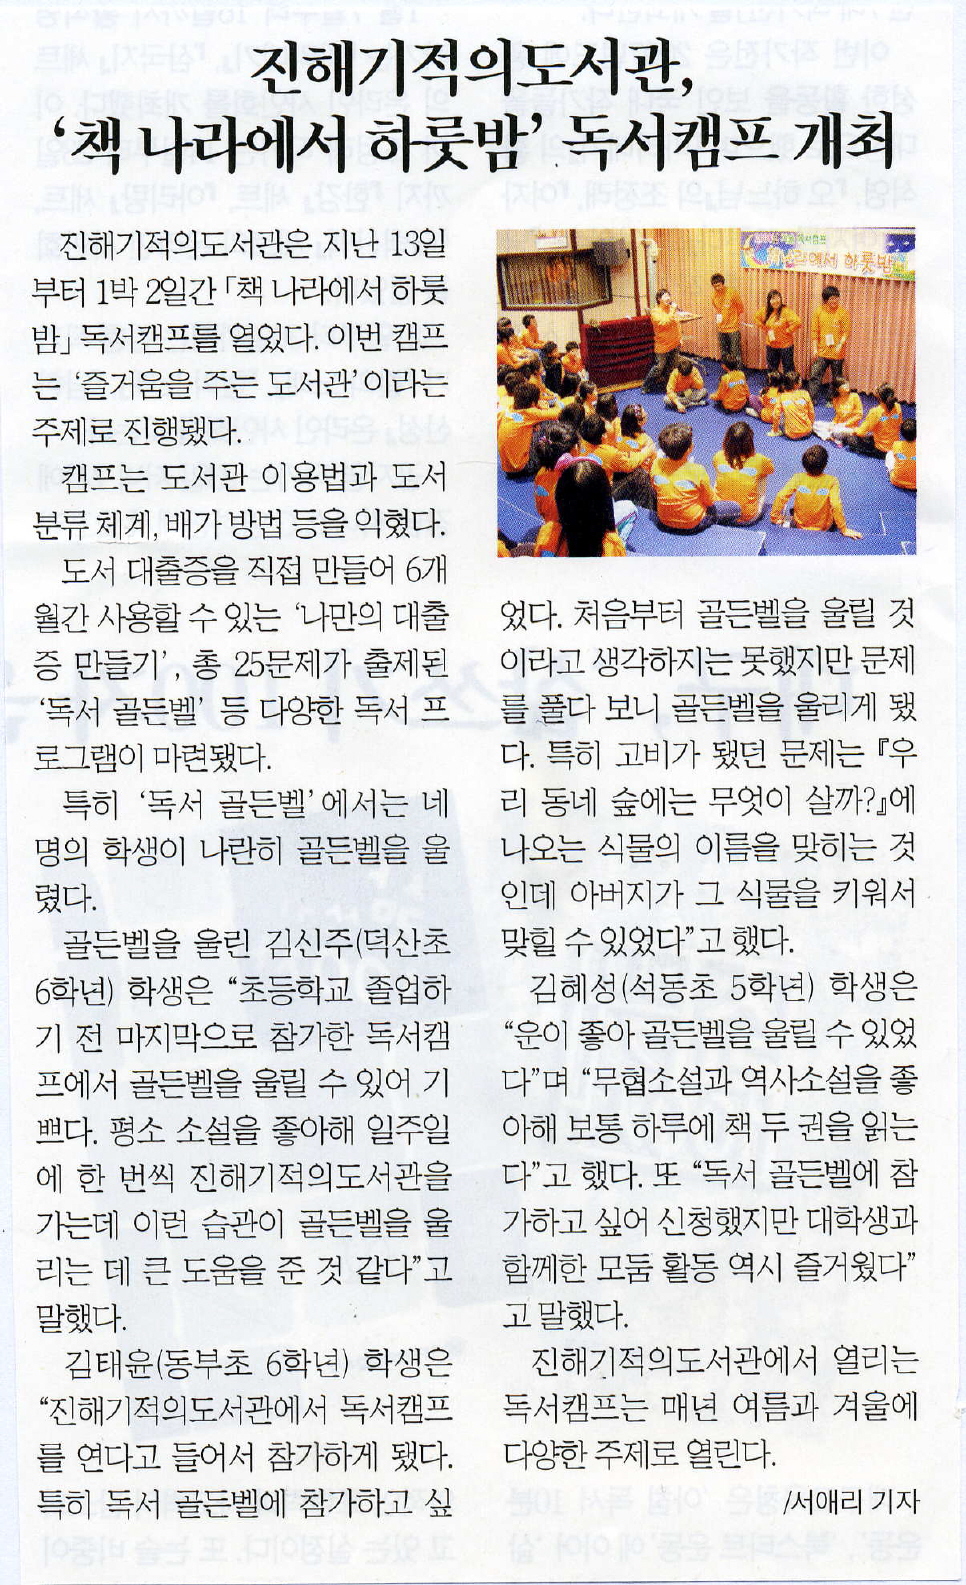 진해기적의도서관, 책나라에서하룻밤 독서캠프 개최( 한국독서교육신문 08-01-28/월)